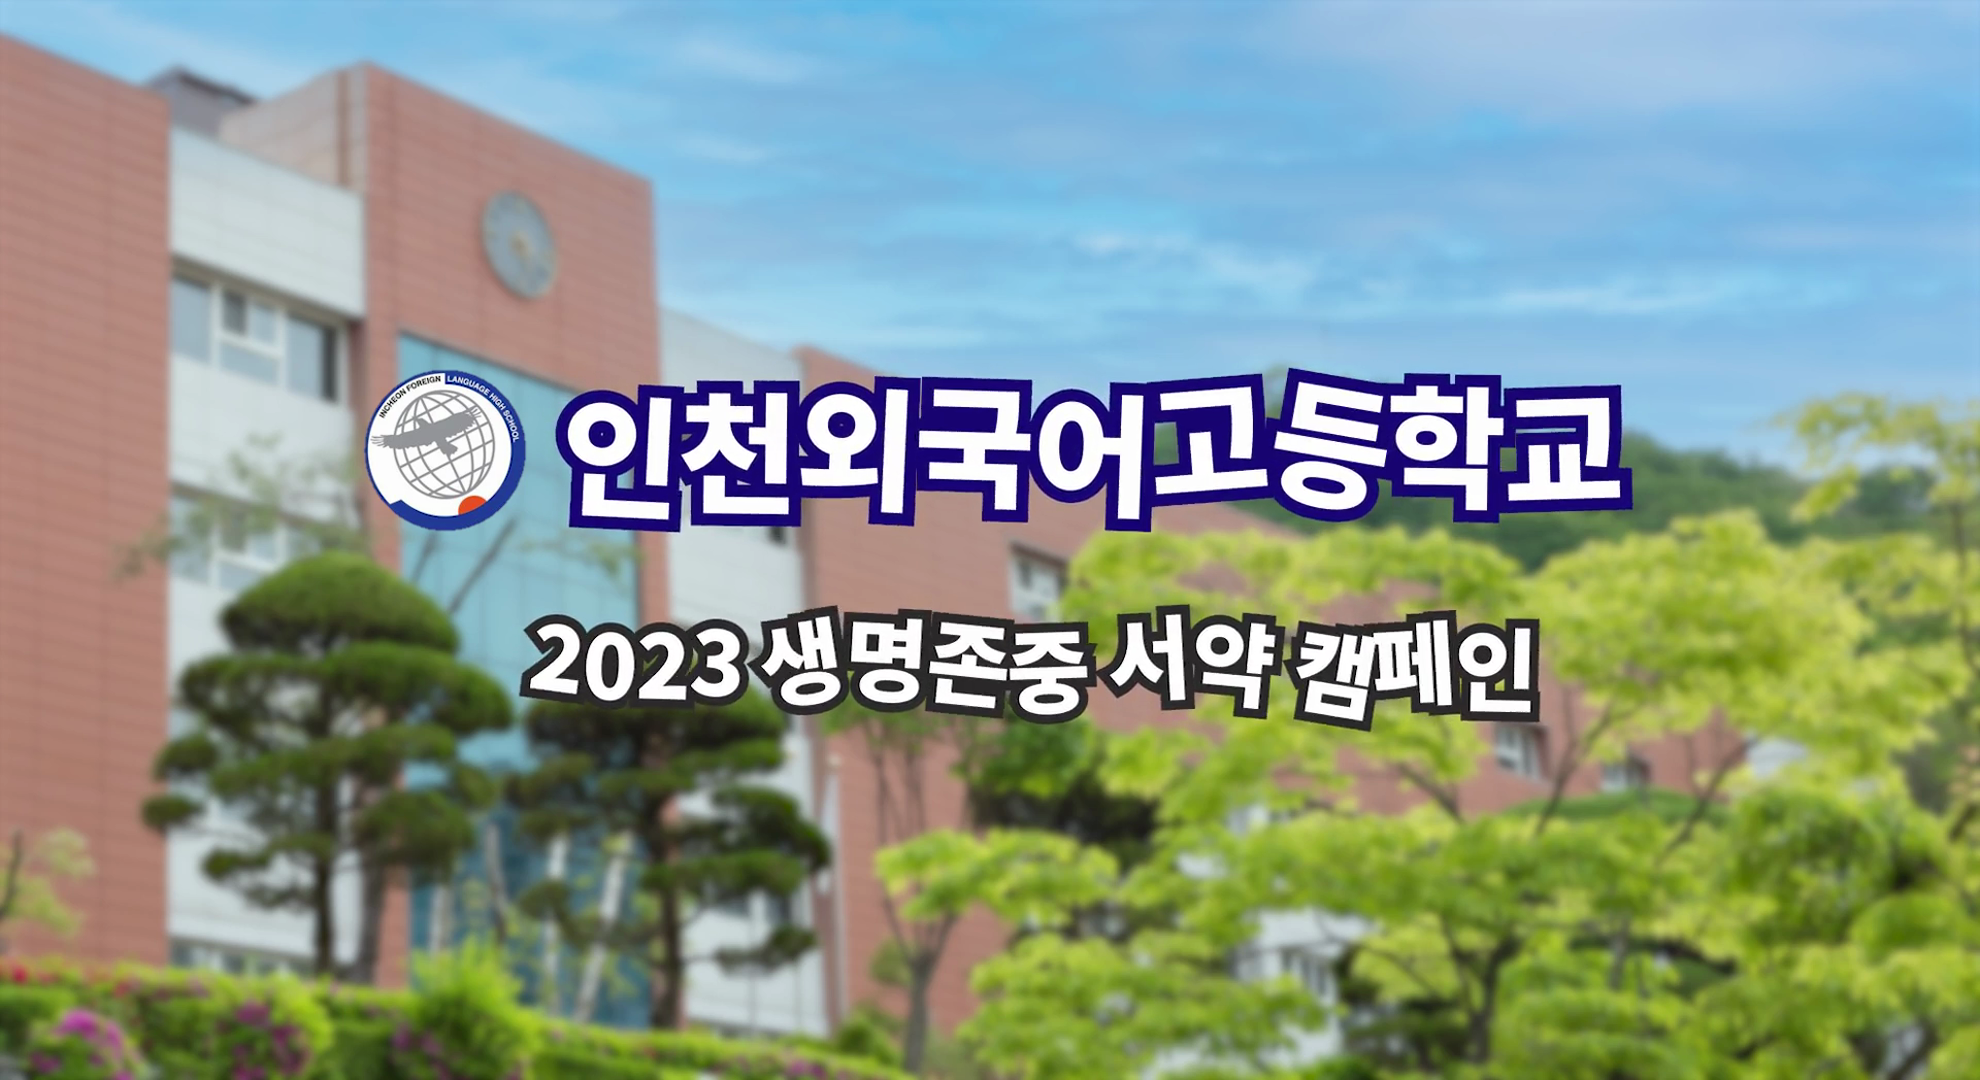 2023년 인천외국어고등학교 생명존중 서약 캠페인 - 반별 서약서